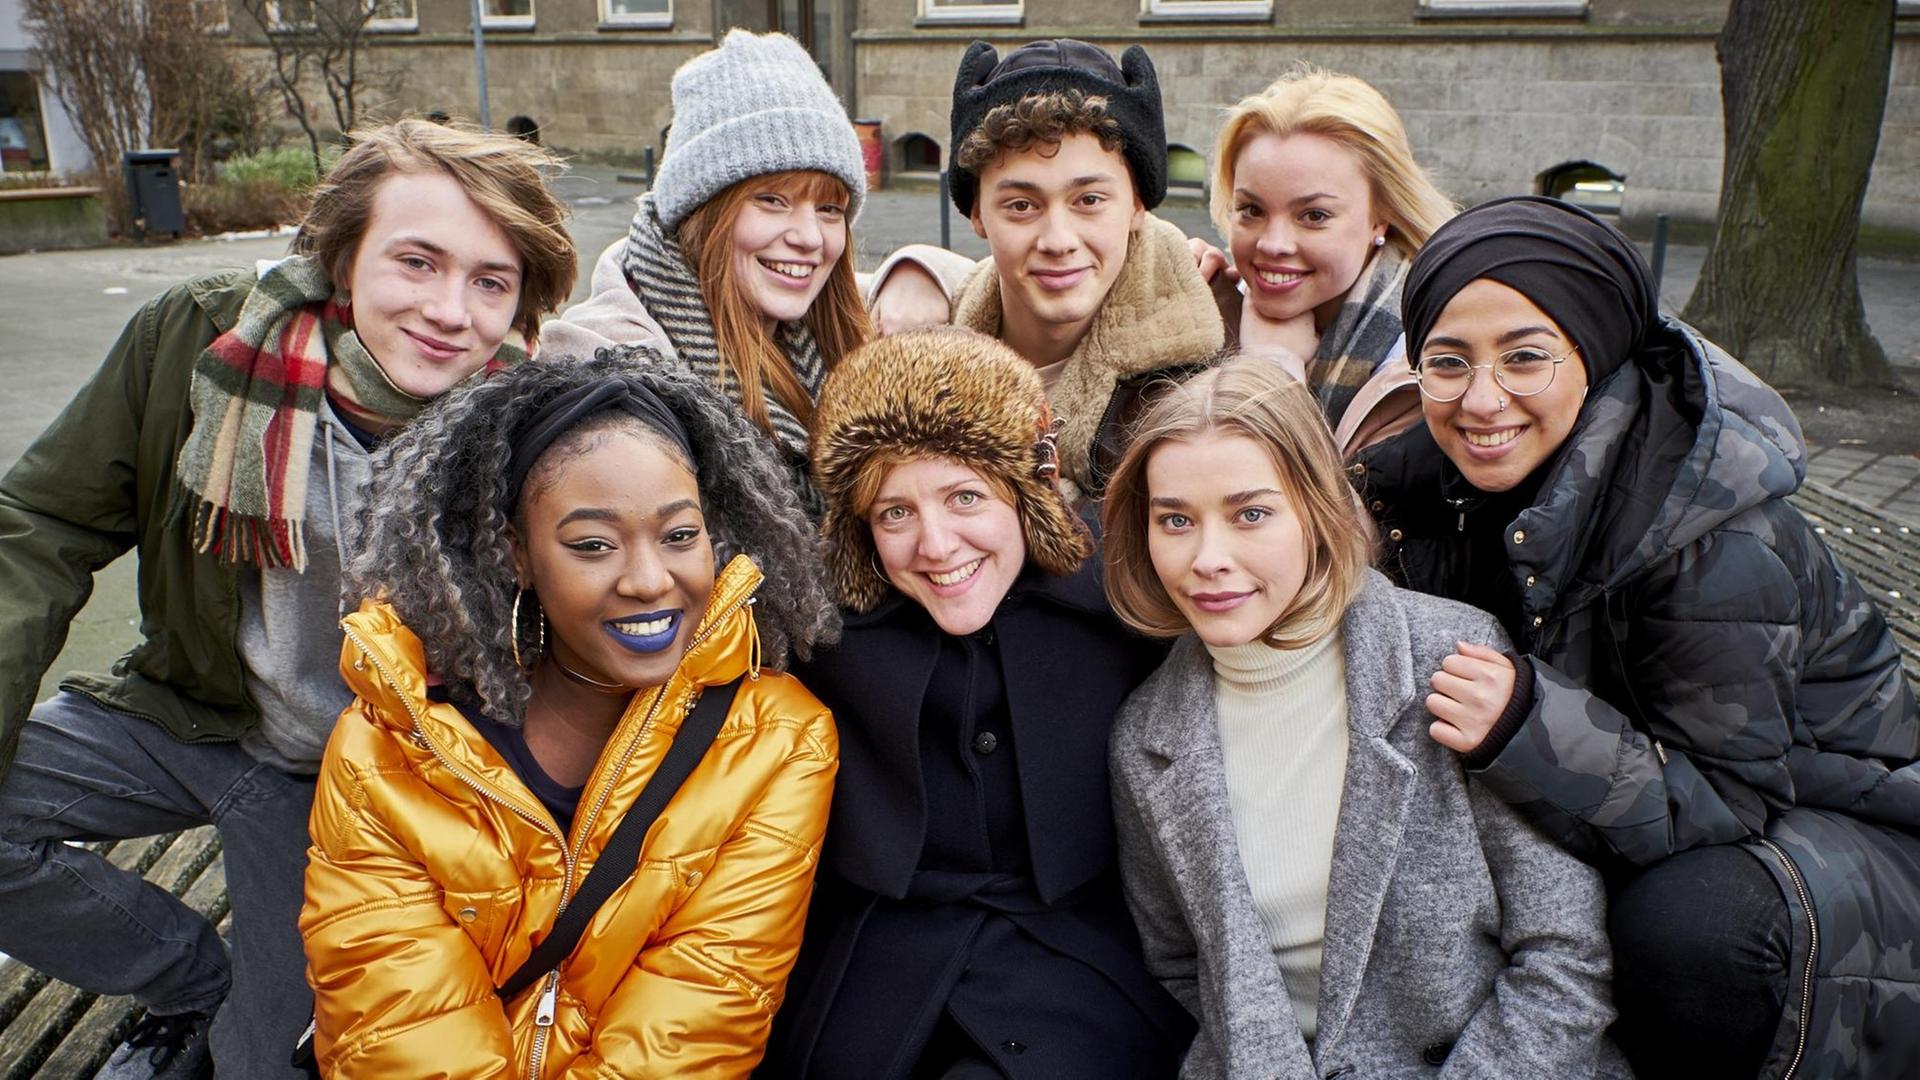 Das Gruppenfoto zeigt acht junge Darsteller - zwei junge Männer, sechs junge Frauen in Winterkleidung - aus der Serie "Druck", die die Alltagsgeschichten von Jugendlichen auf dem Weg zum Abitur erzählt.